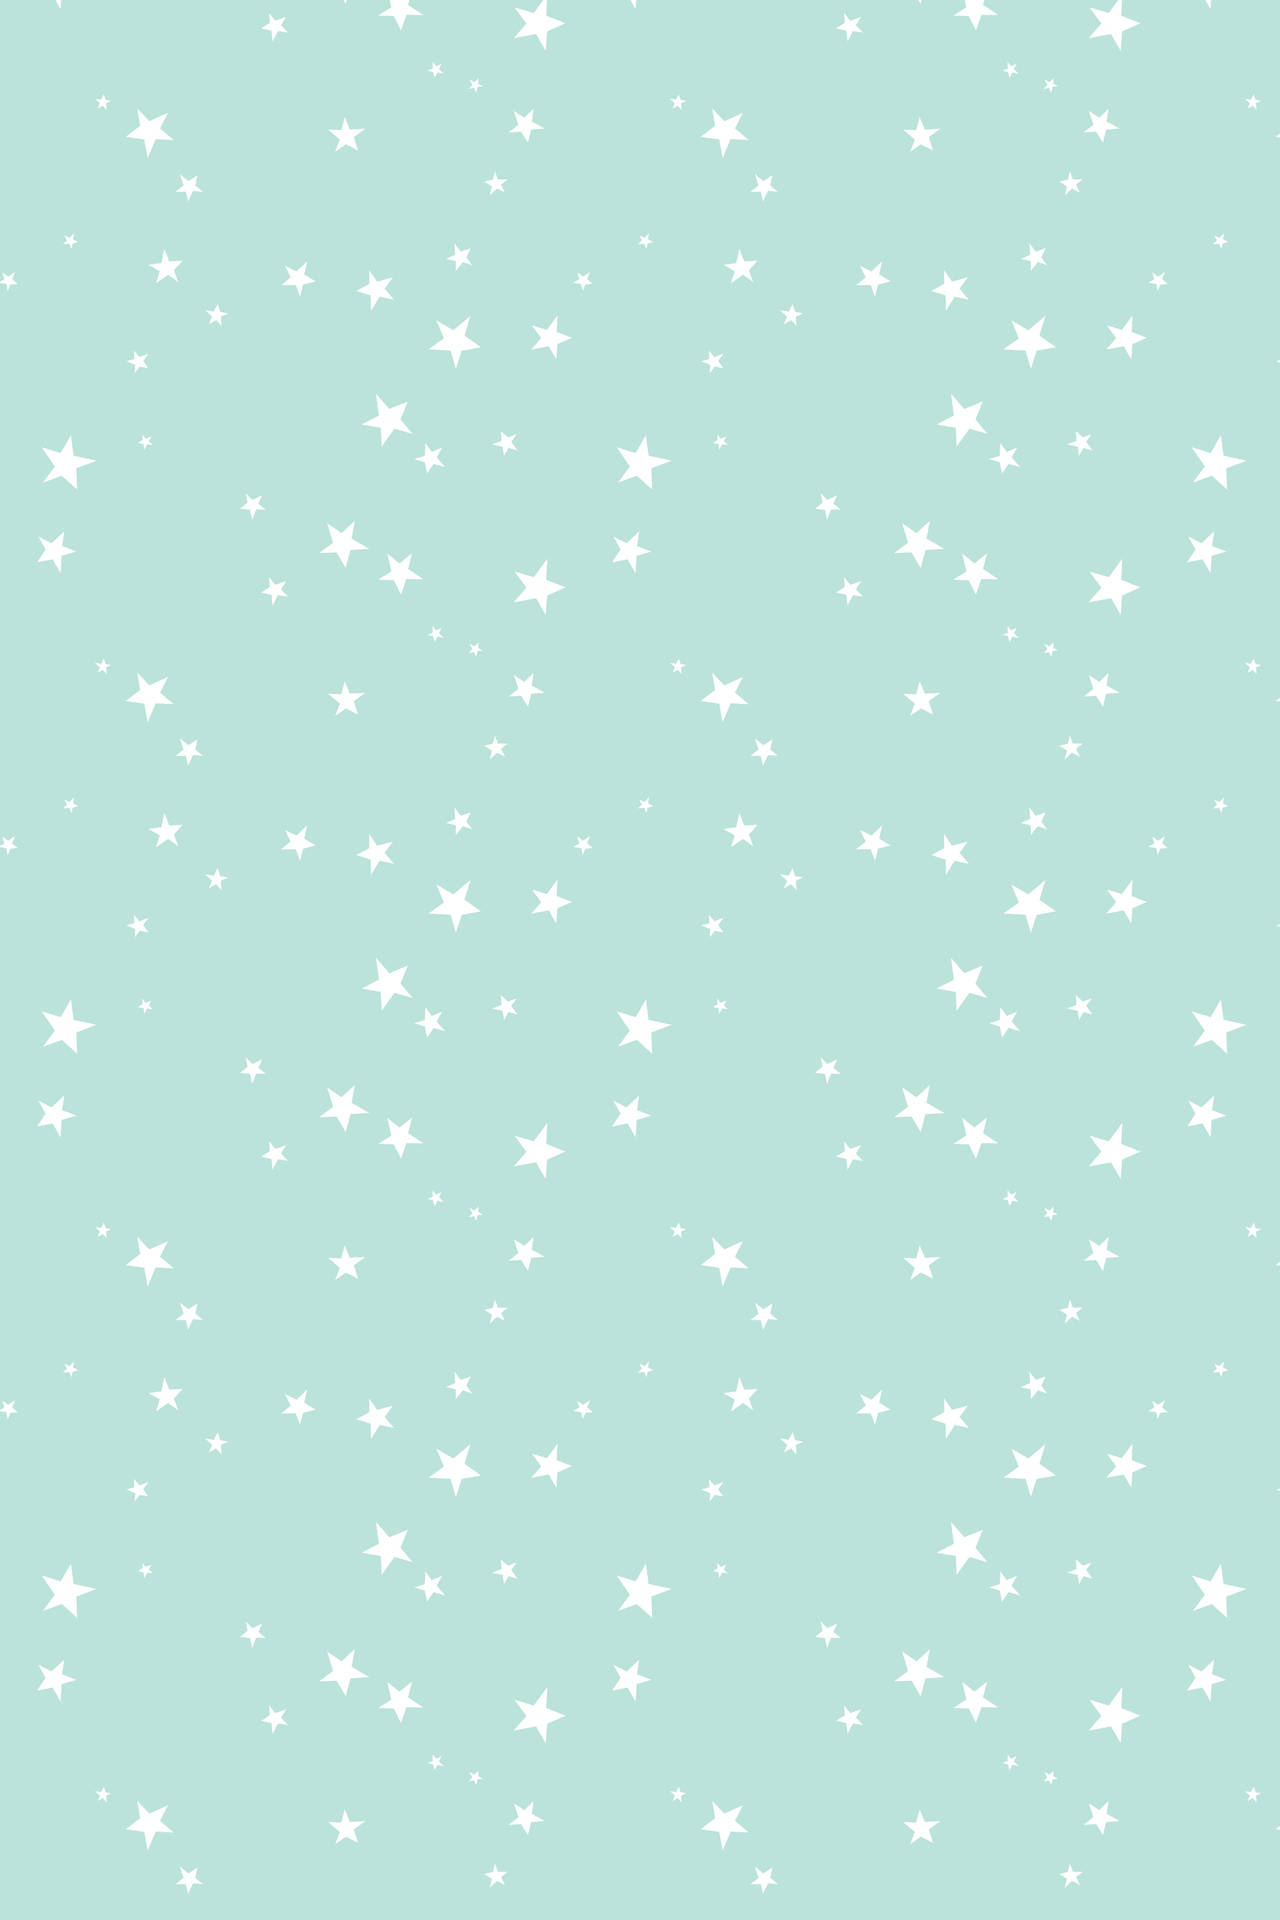 Little White Stars On Pastel Green Wallpaper